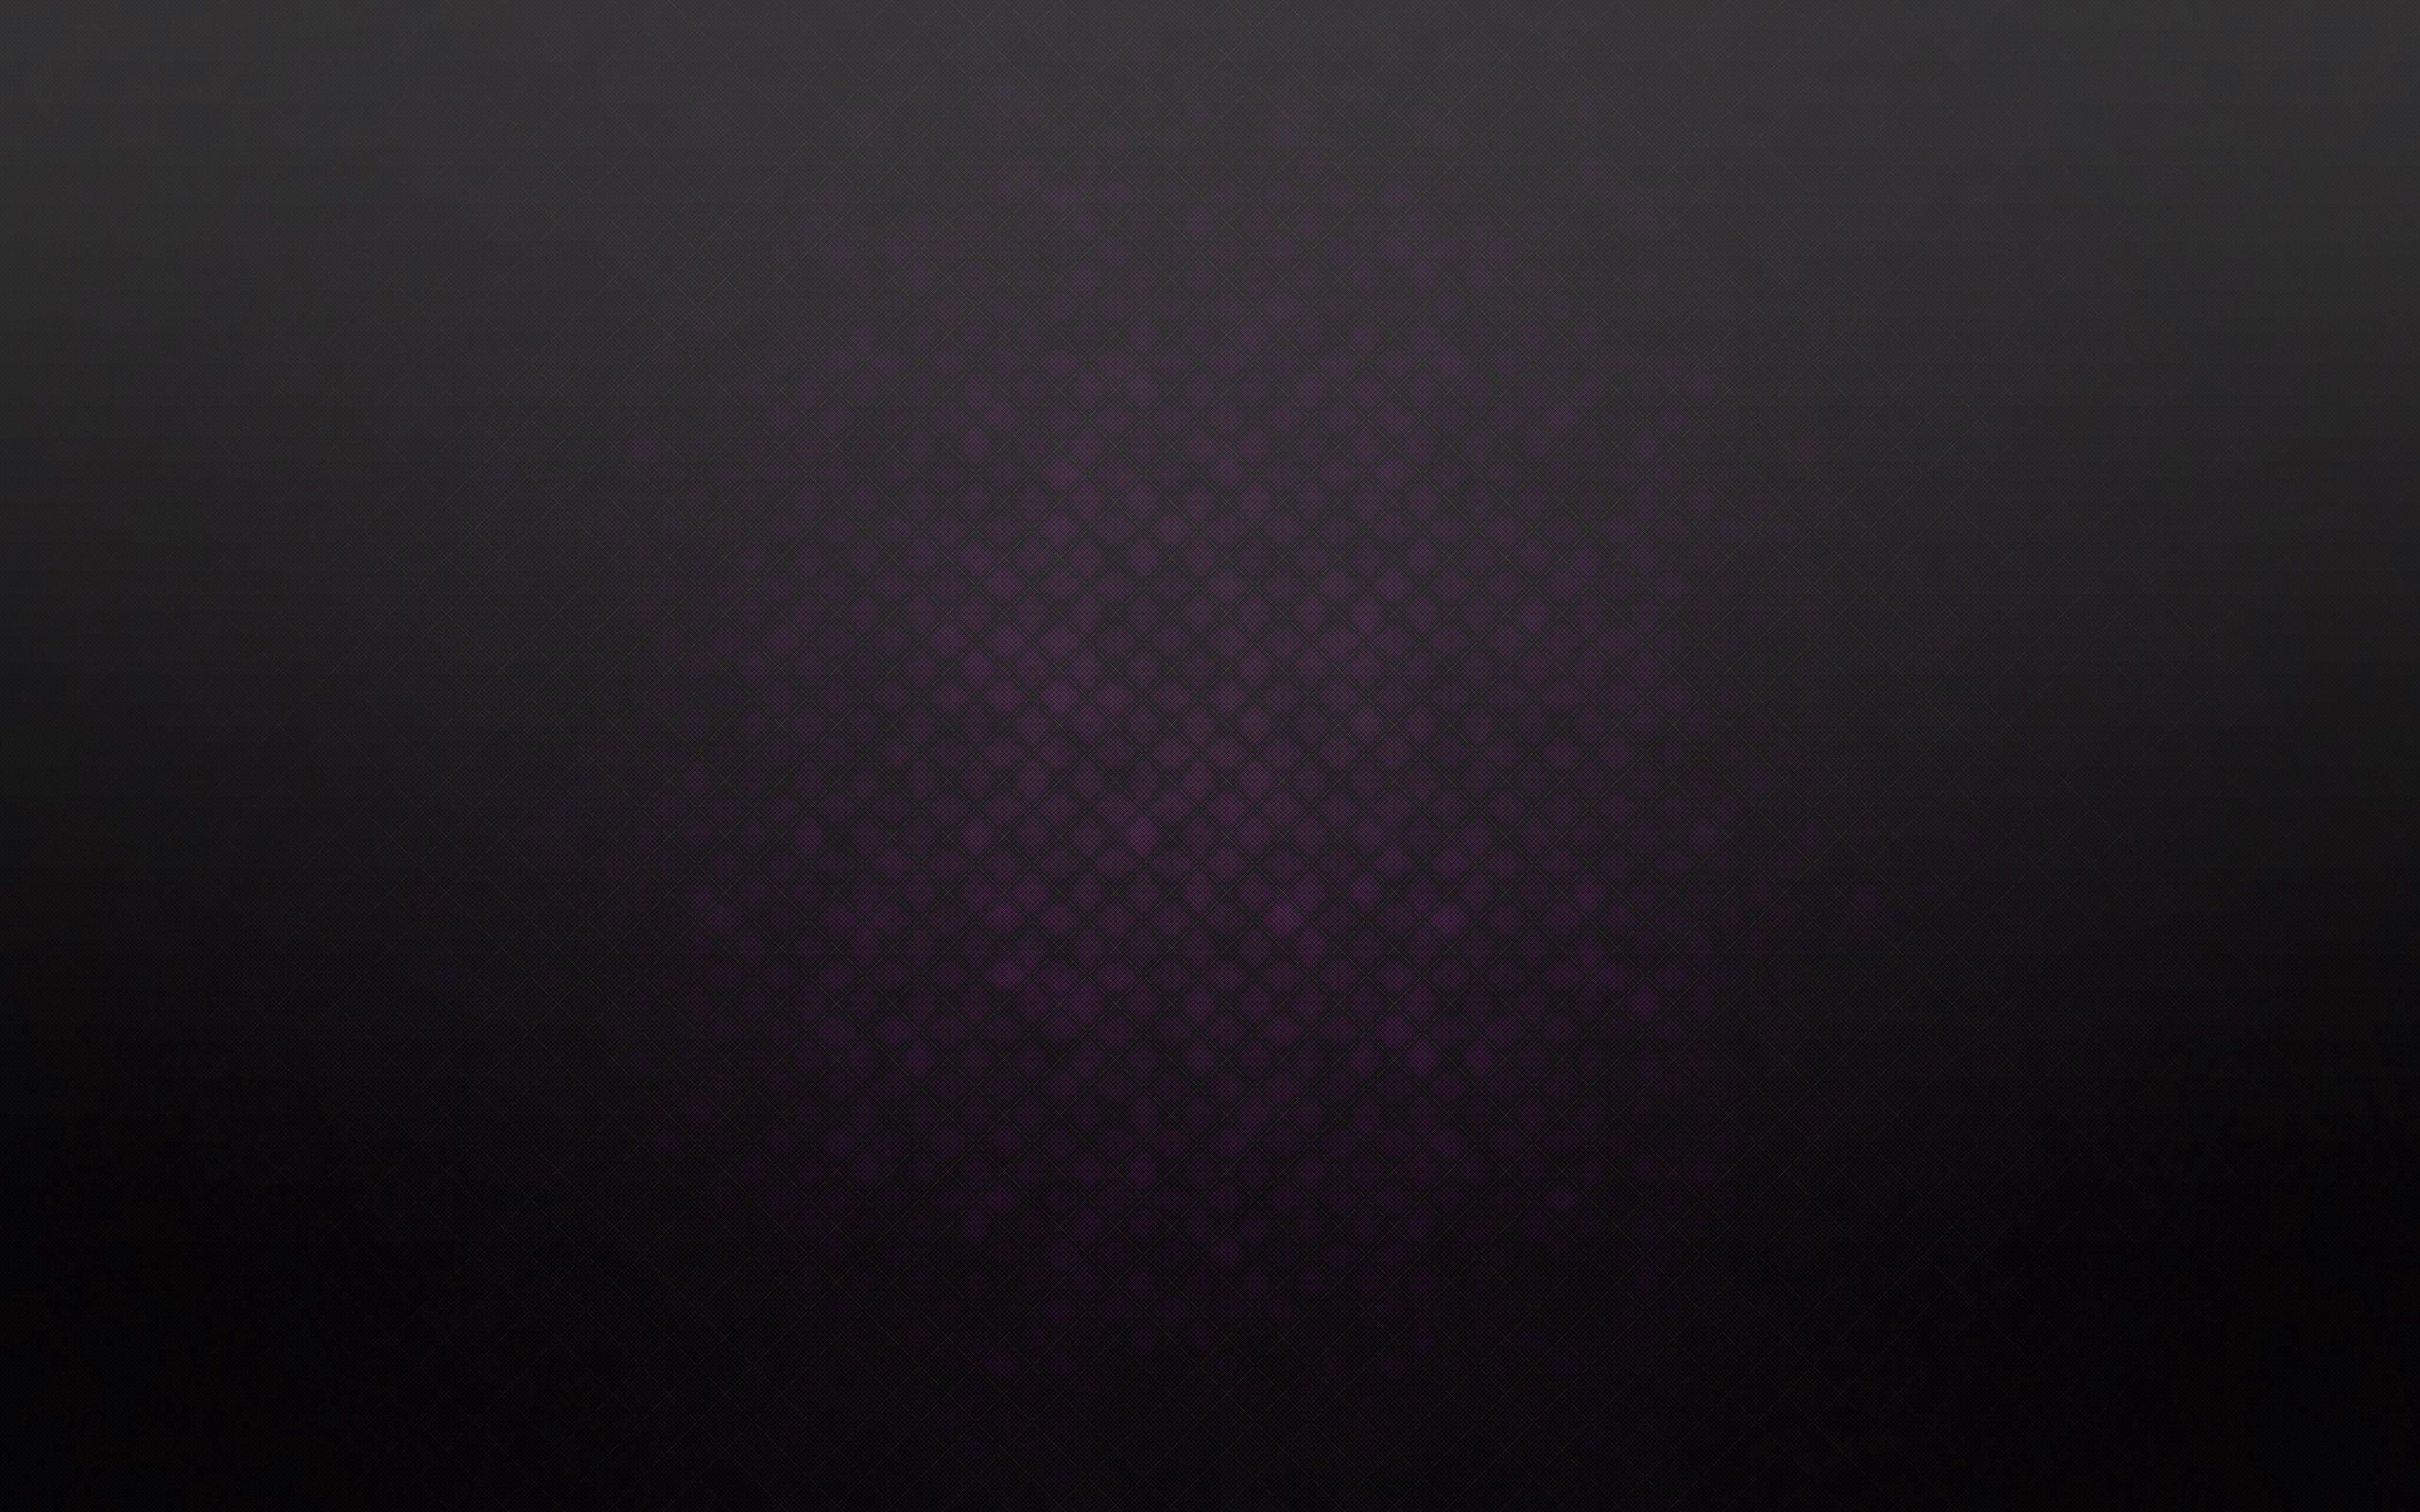  Violet HQ Background Images